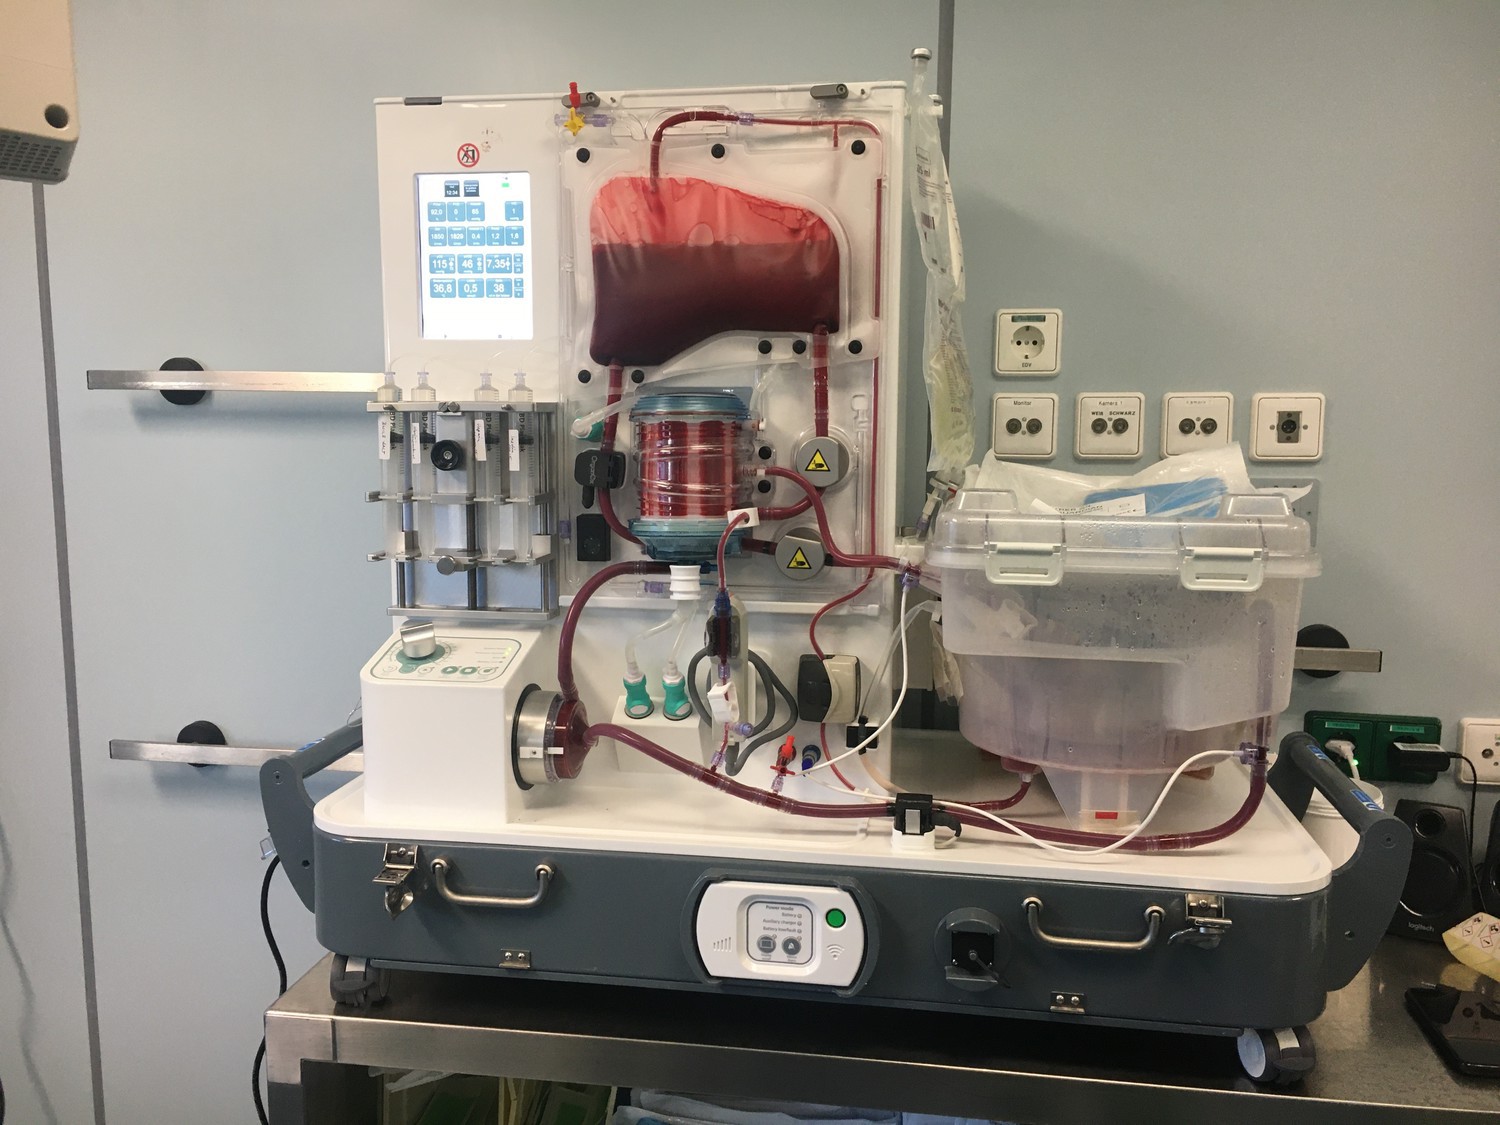 In diesem vollautomatisierten Organperfusionsgerät kann das Innere des menschlichen Körpers fast perfekt nachgebildet werden. Operateure haben so mehr Zeit für eine Transplantation. Neben dem Leipziger Uniklinikum besitzen derzeit bundesweit nur zwei weitere Zentren eine solche Maschine.